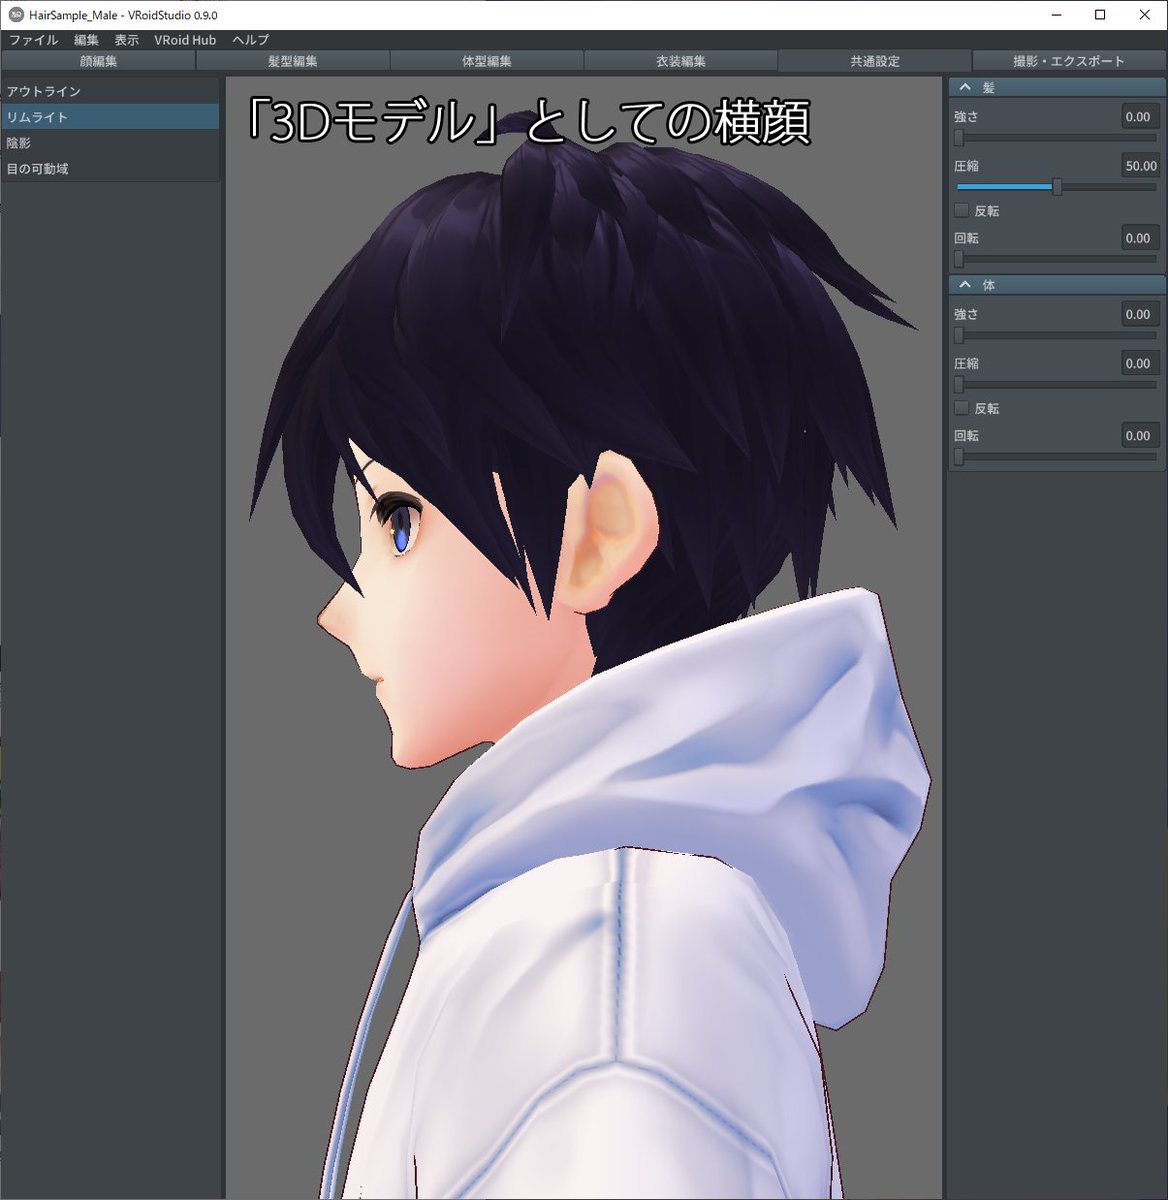 アニメのキャラデザの横顔の真実 アニメの横顔のデザインは3dモデルのための 真横 のデザイン画ではない 3d 3dmodeling Gamedev Togetter